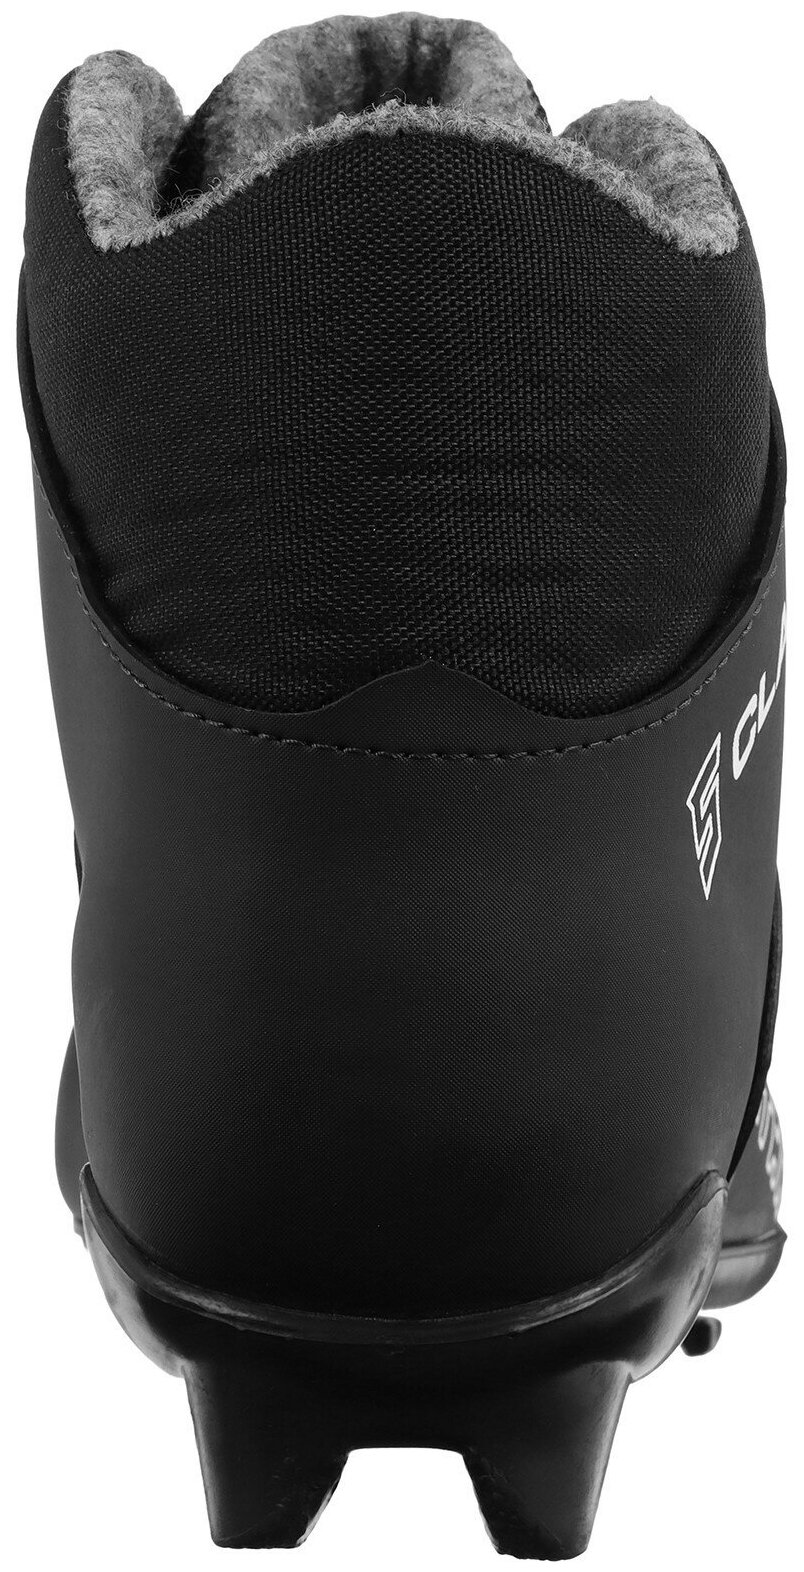 Ботинки лыжные Winter Star "Сlassic", SNS, искусственная кожа, размер 39, цвет чёрный, серый